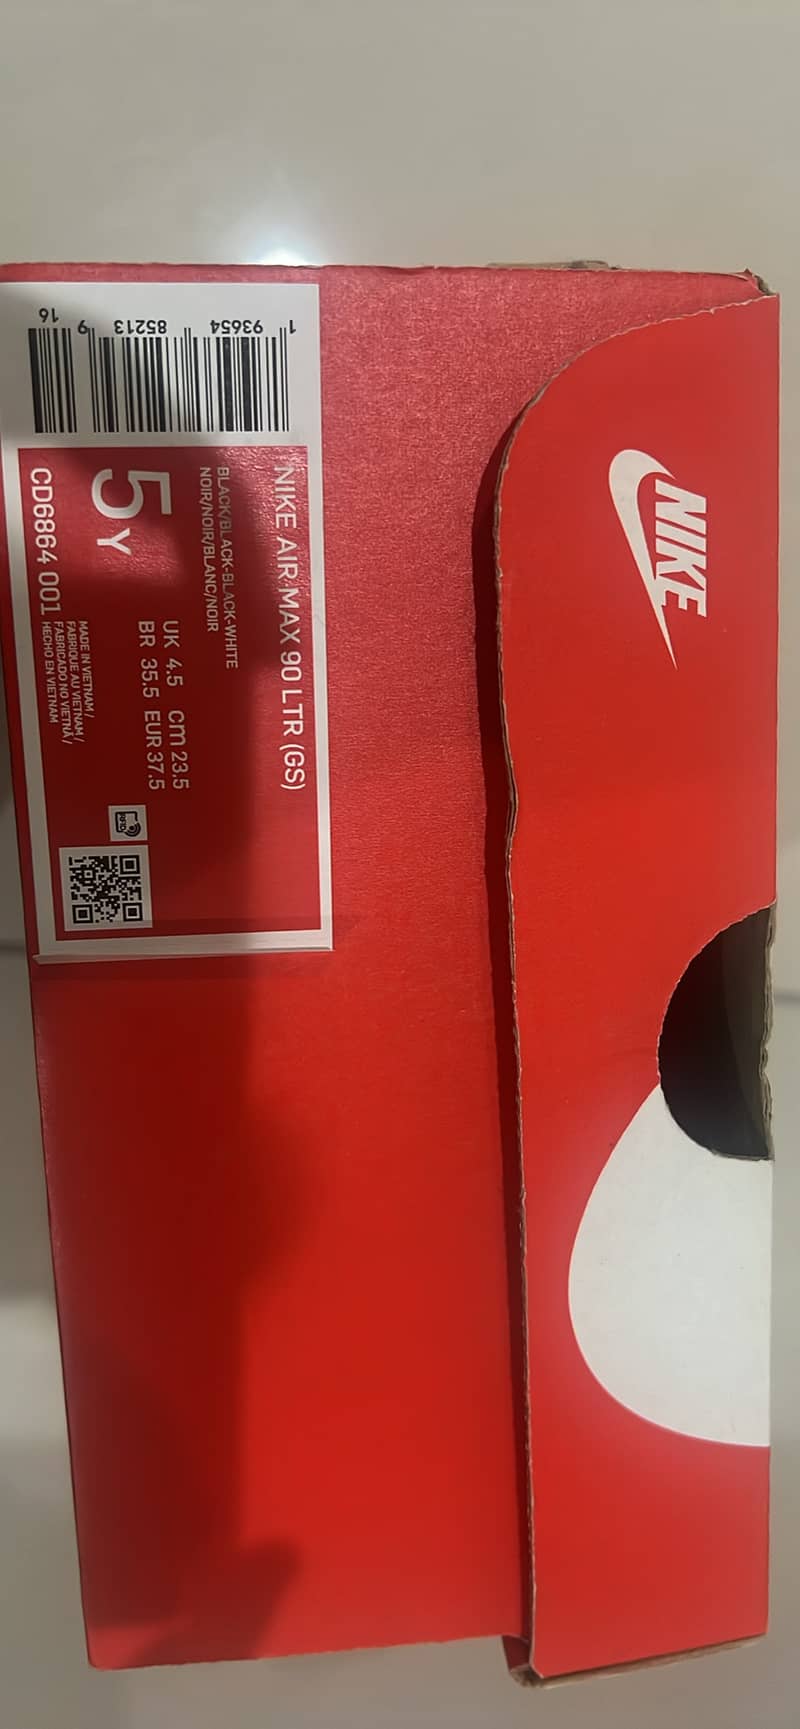 Nike Air Max 90 3